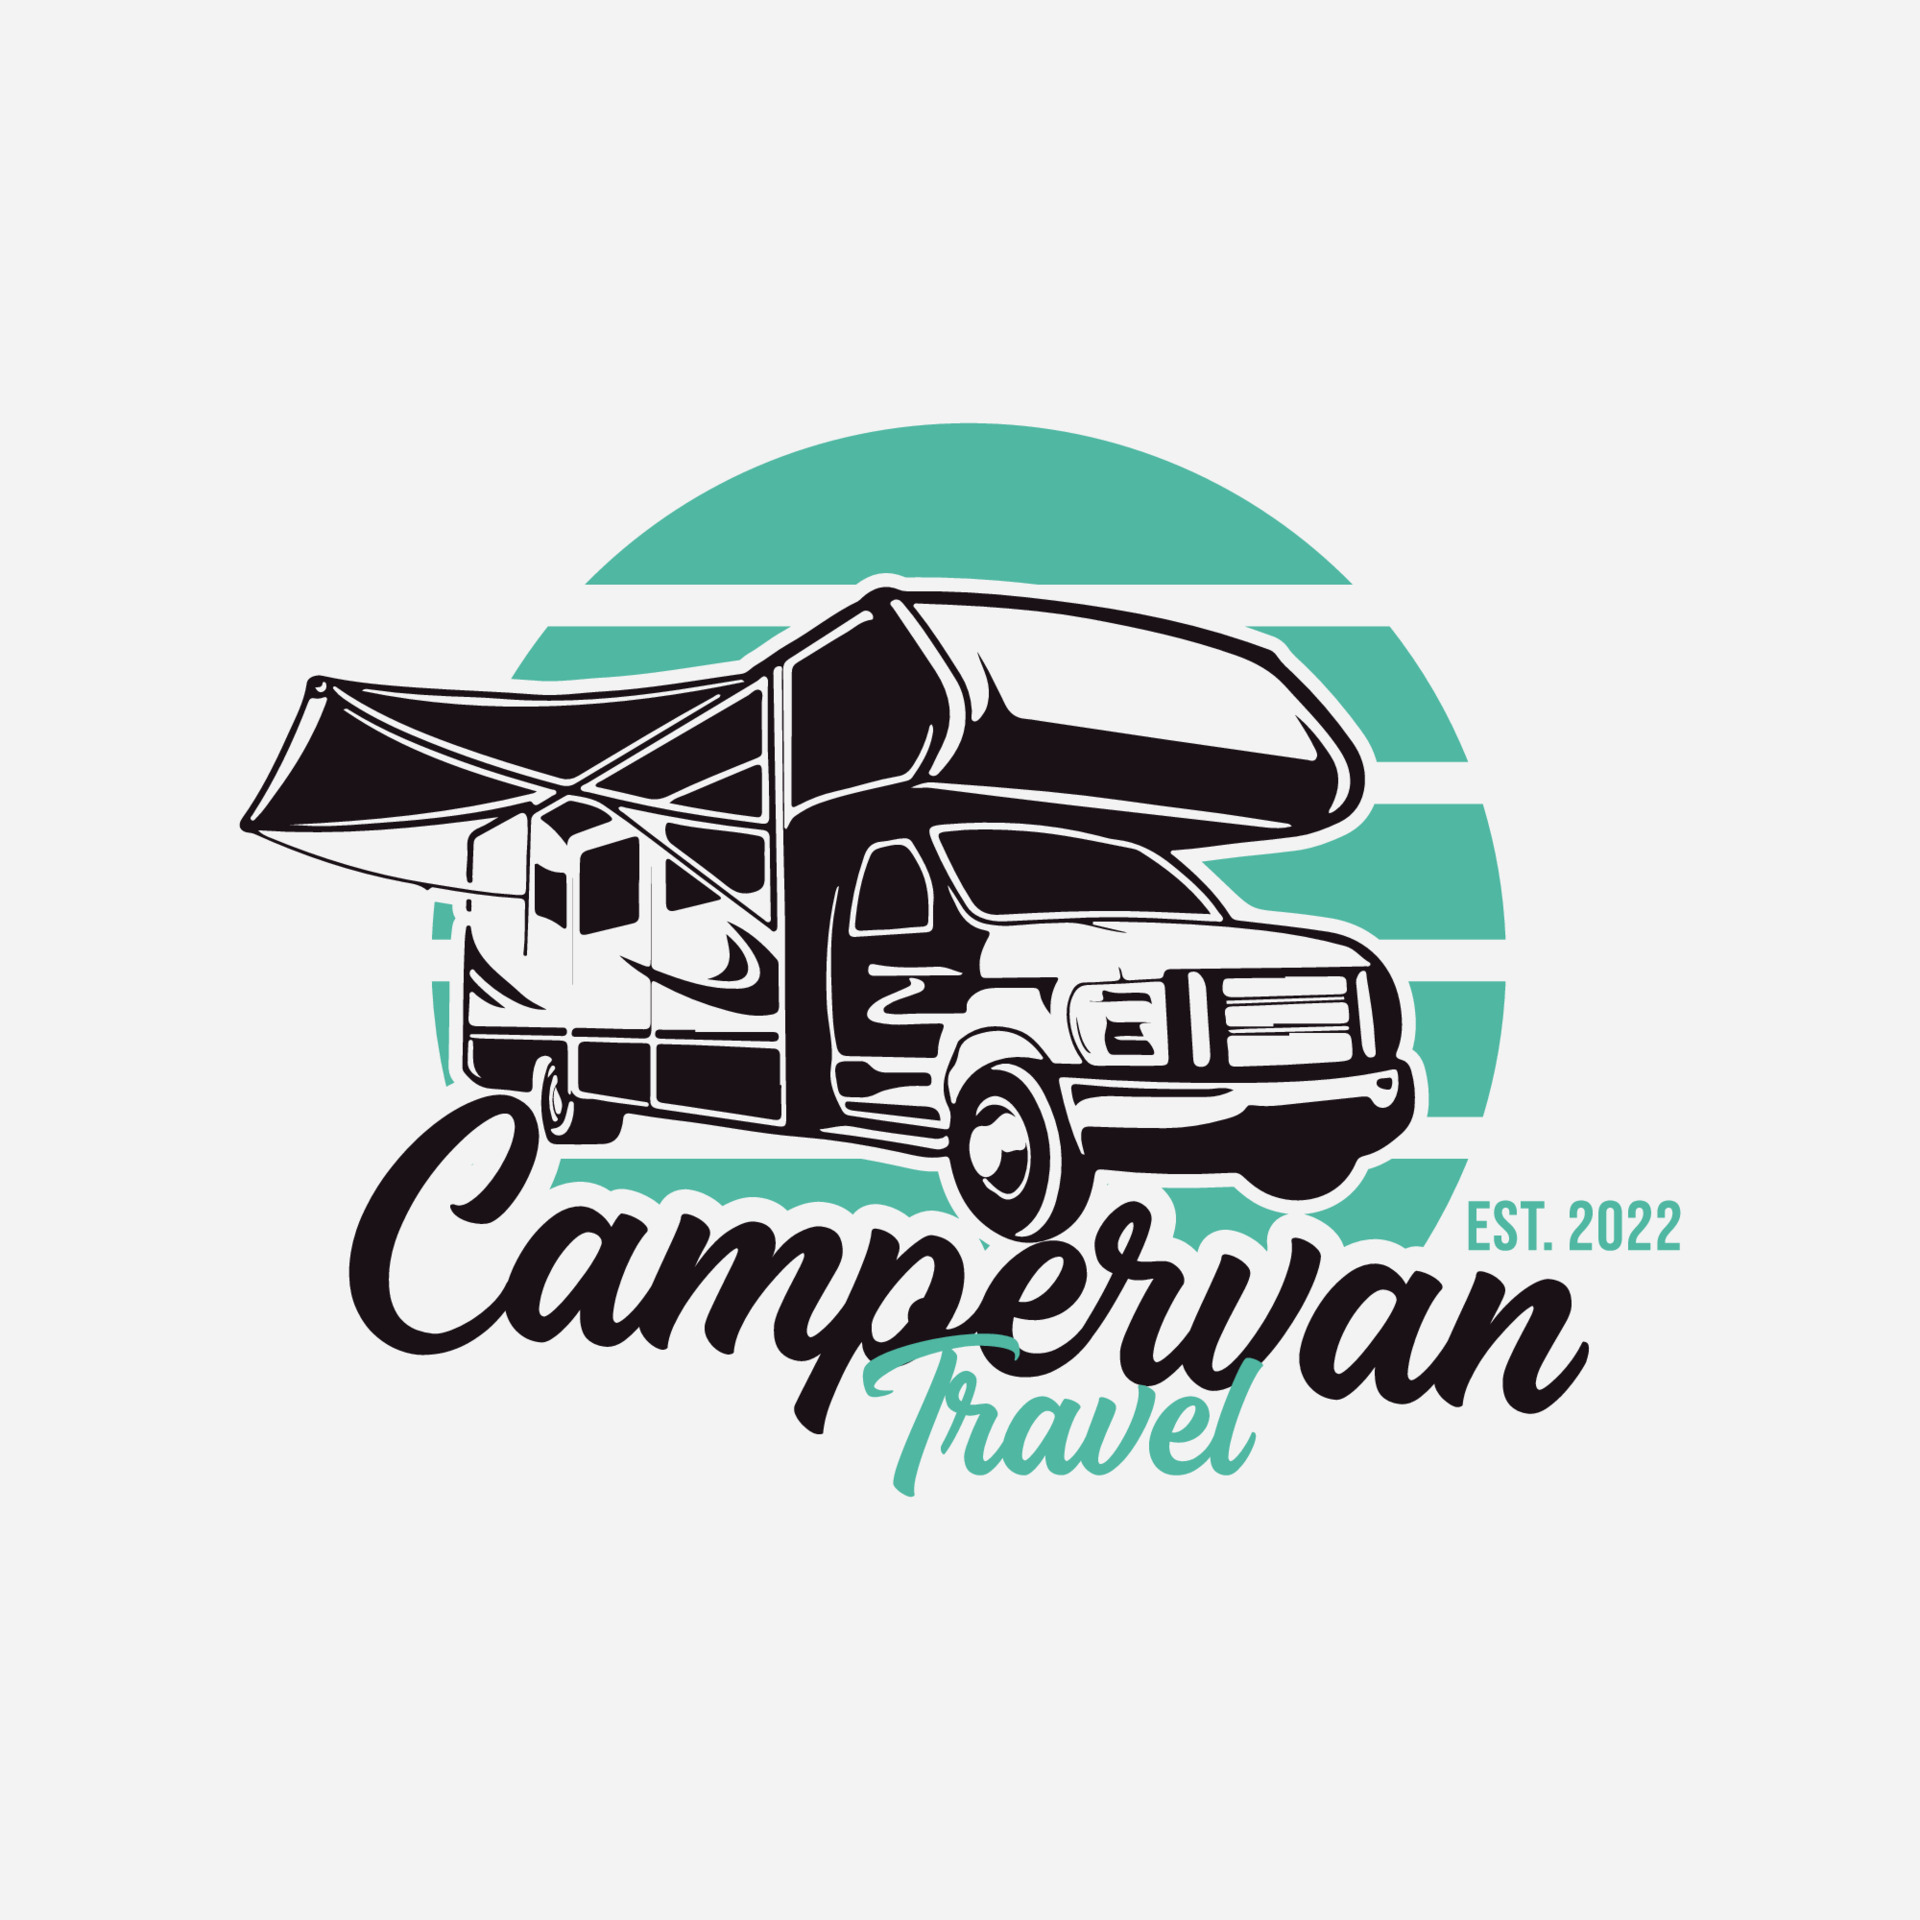 camper van travel logo vector design 17227045 Vector Art at Vecteezy